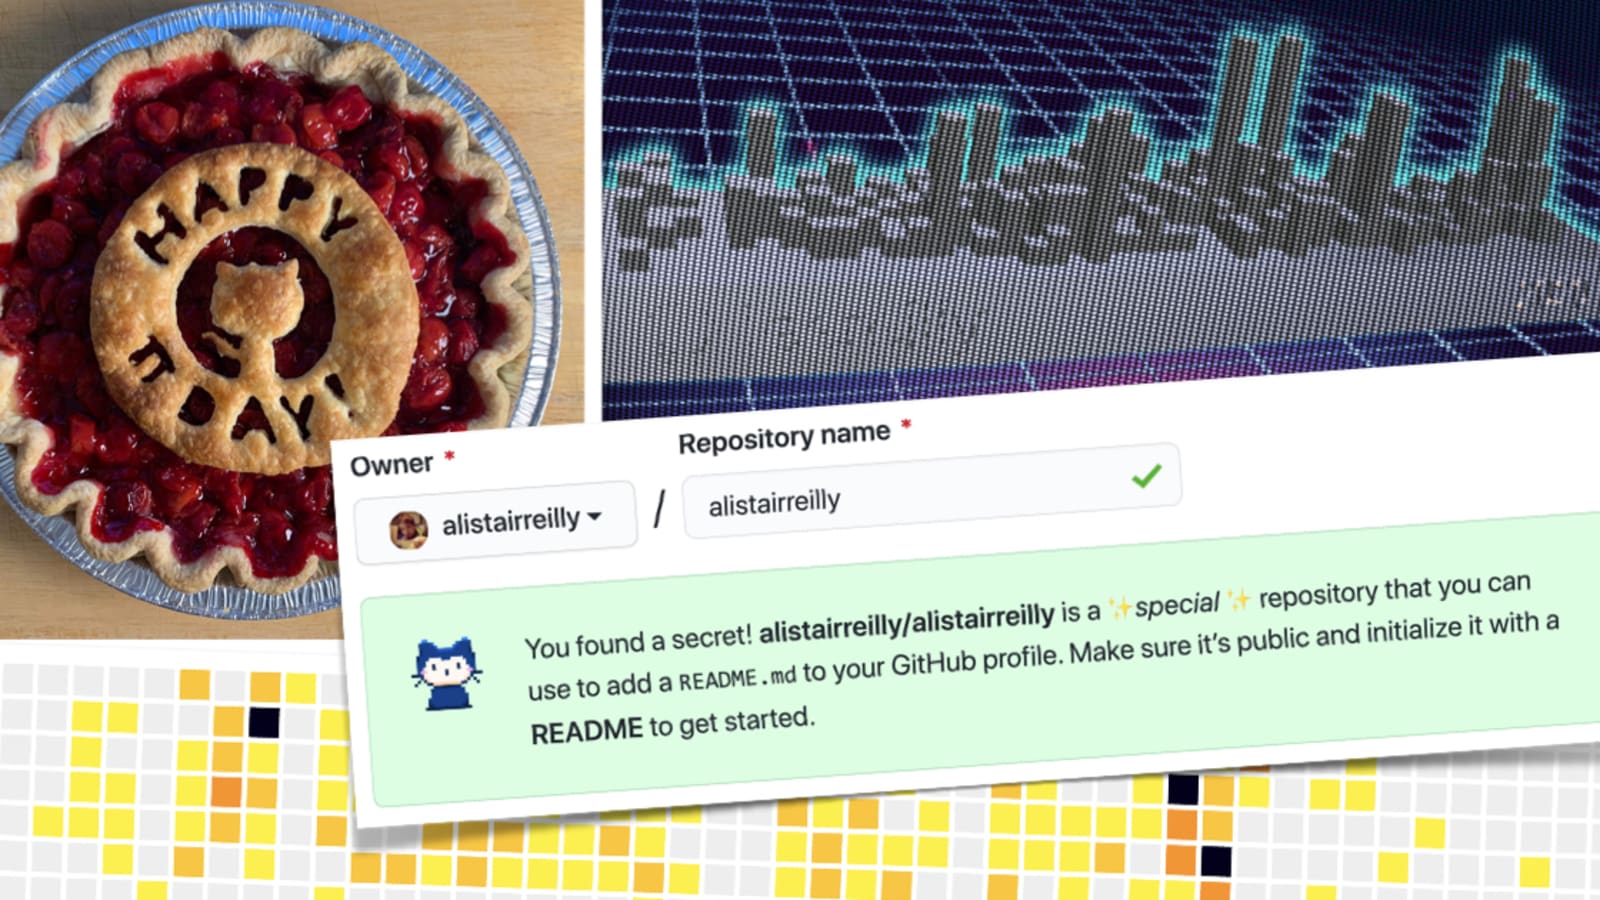 funny-game · GitHub Topics · GitHub